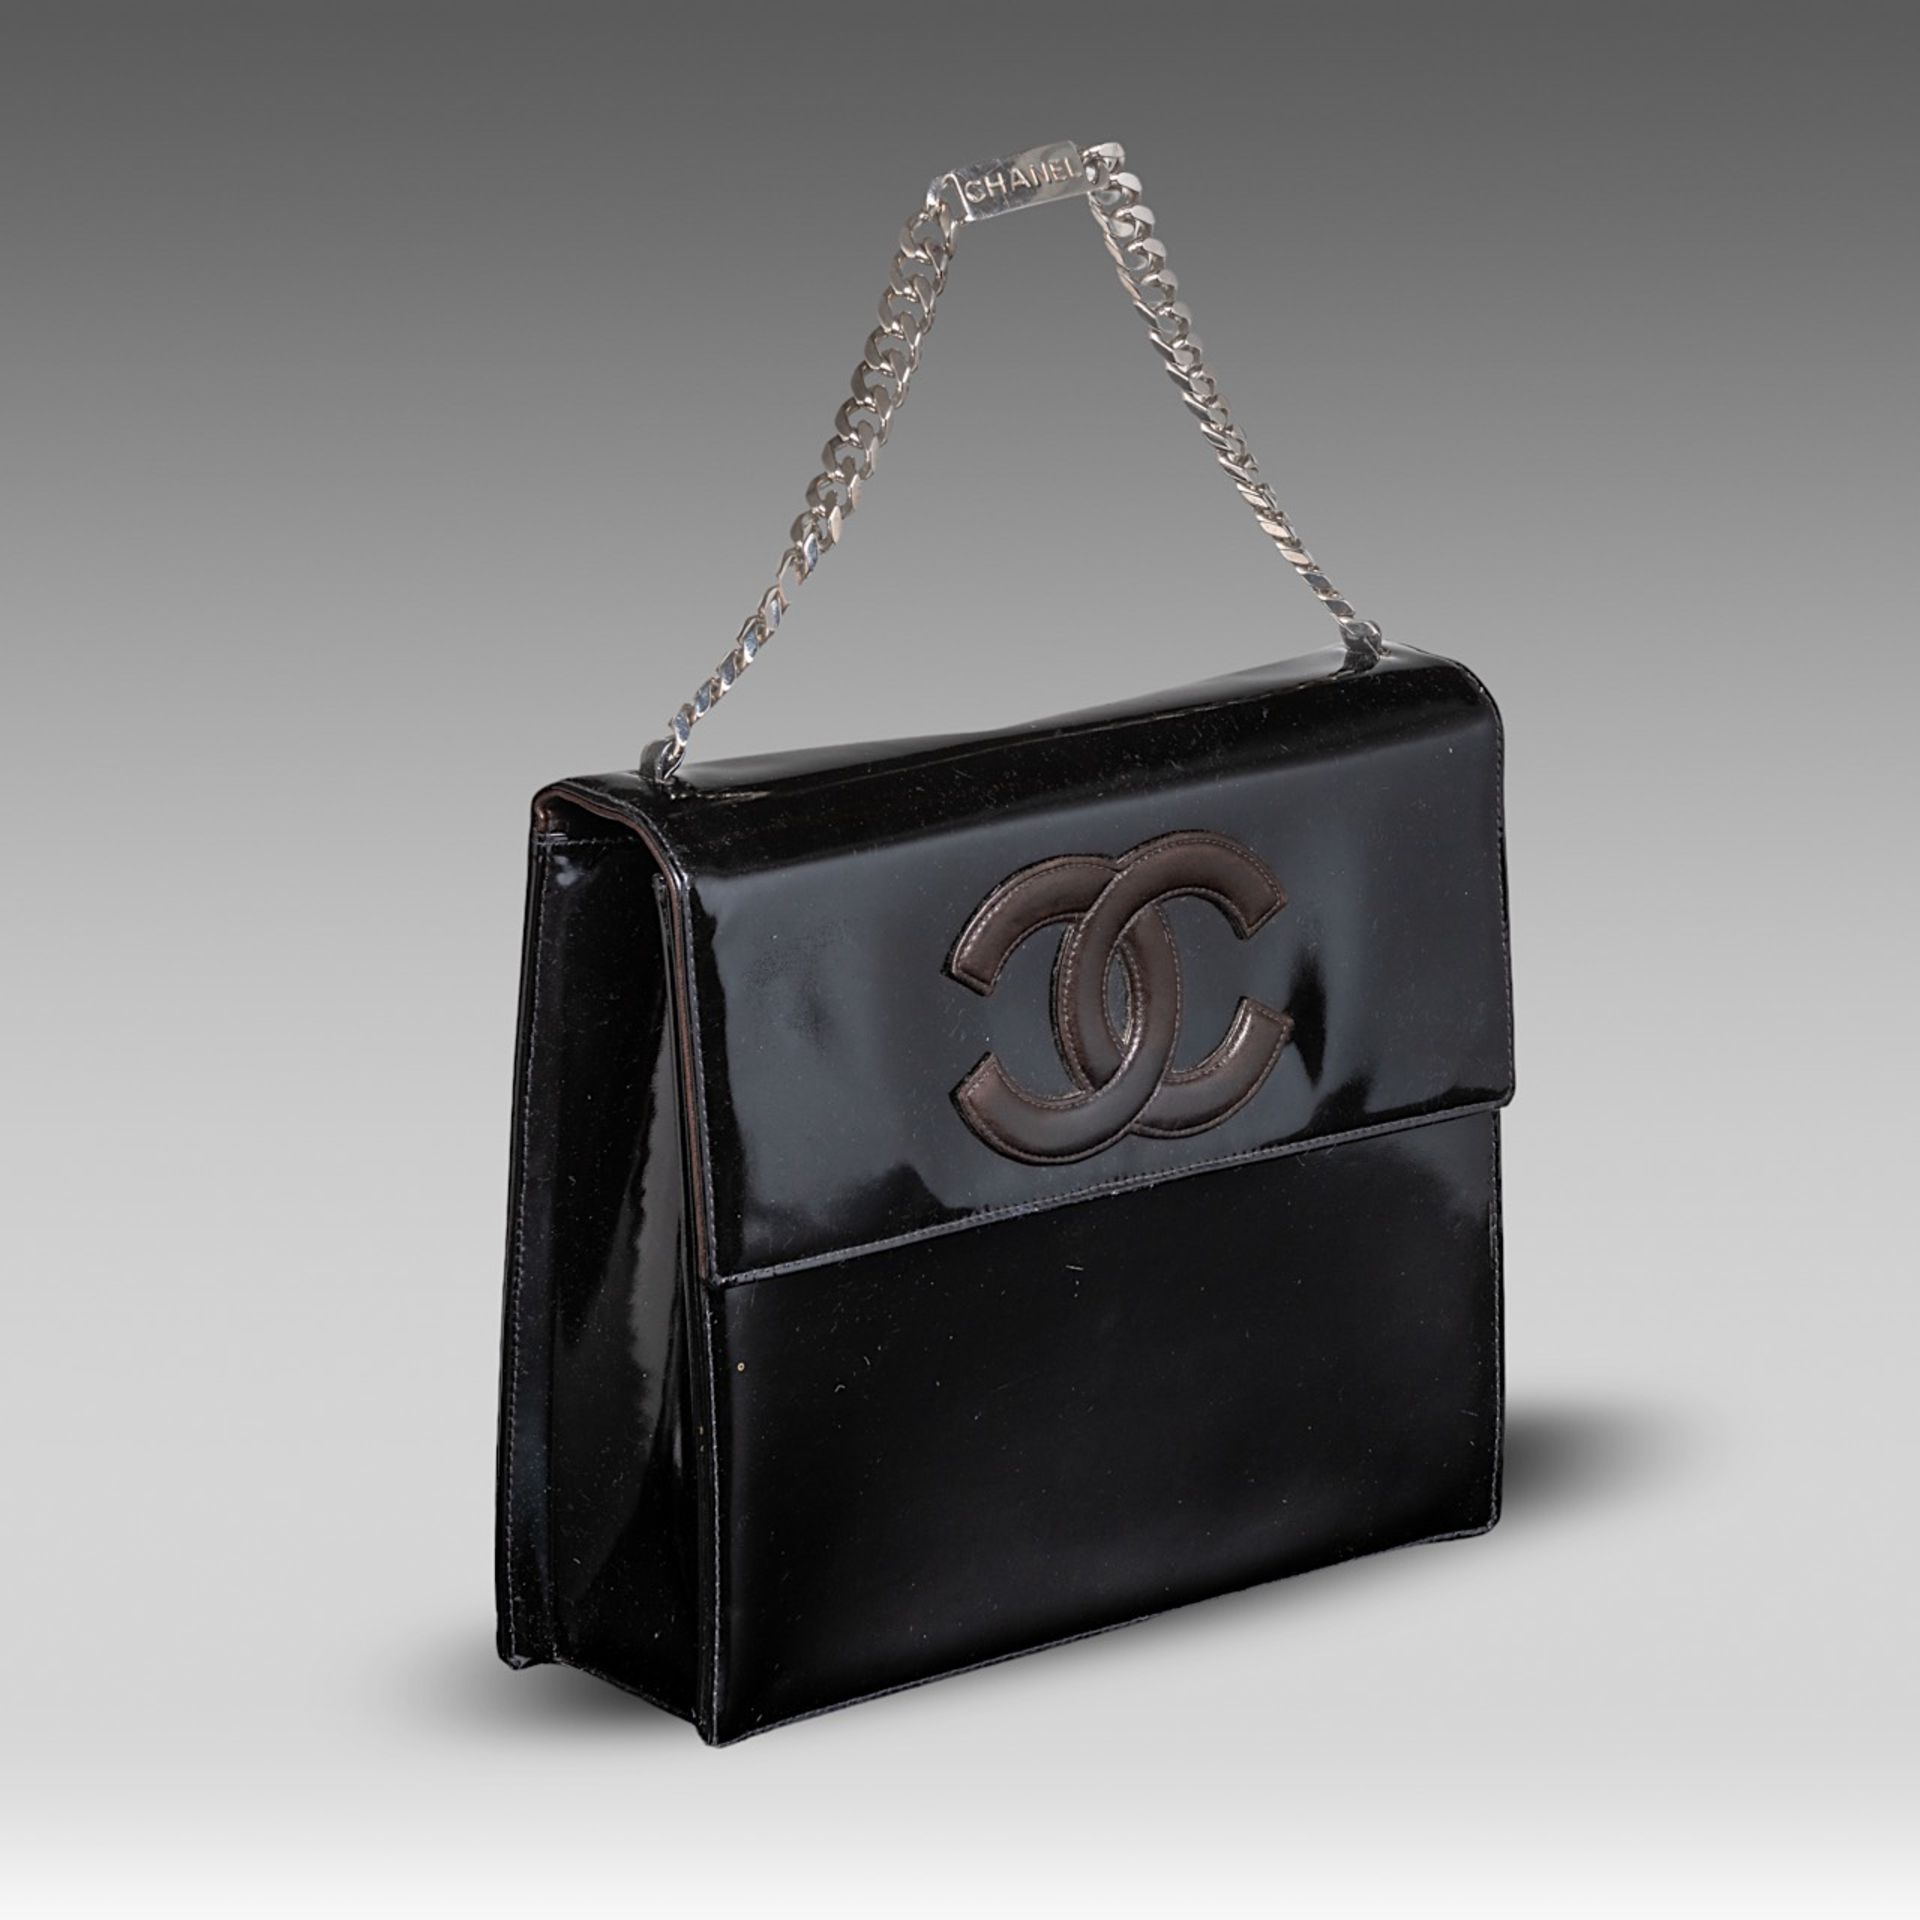 A Chanel flap handbag in black patent leather, H 22 - W 25 - D 8 cm - Bild 6 aus 10